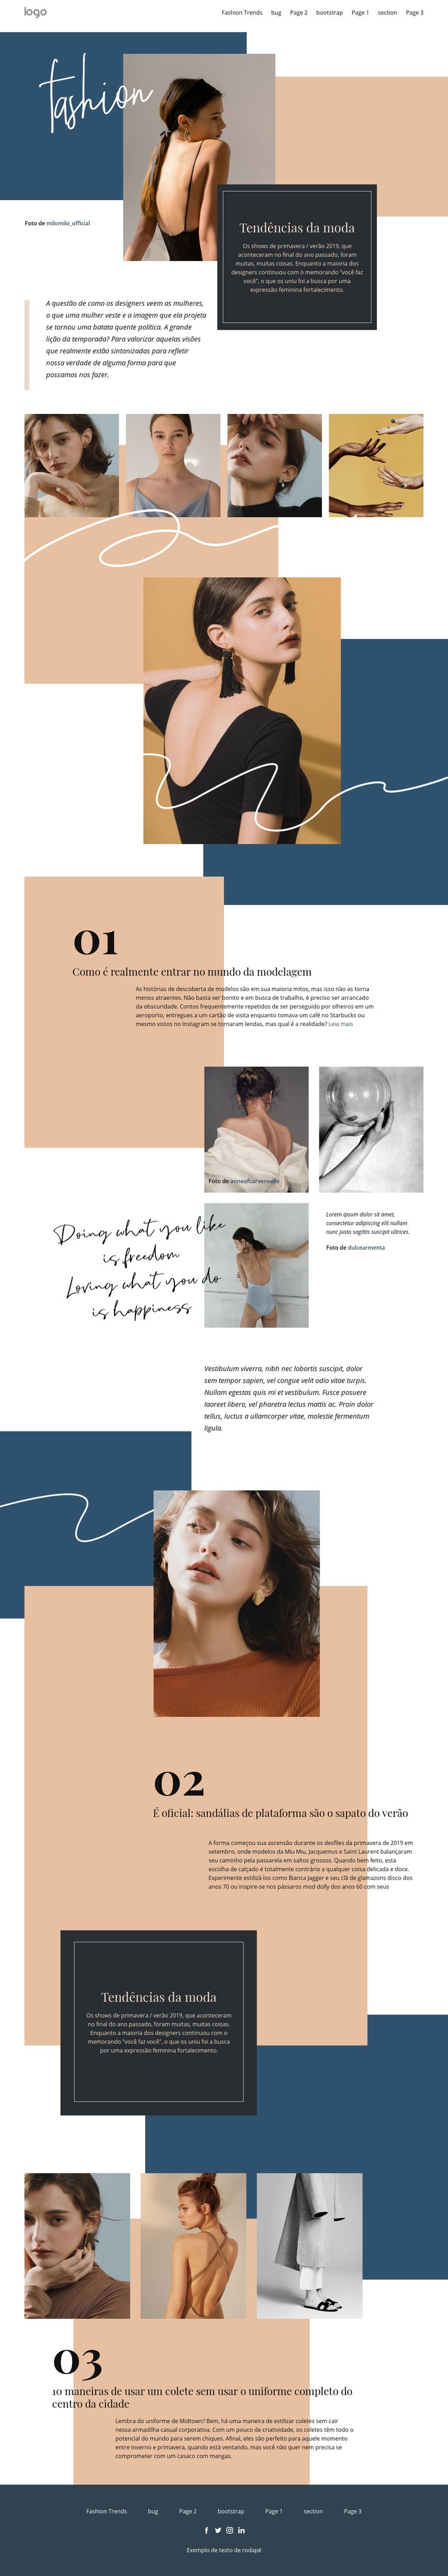 Tendências inovadoras da moda Design do site